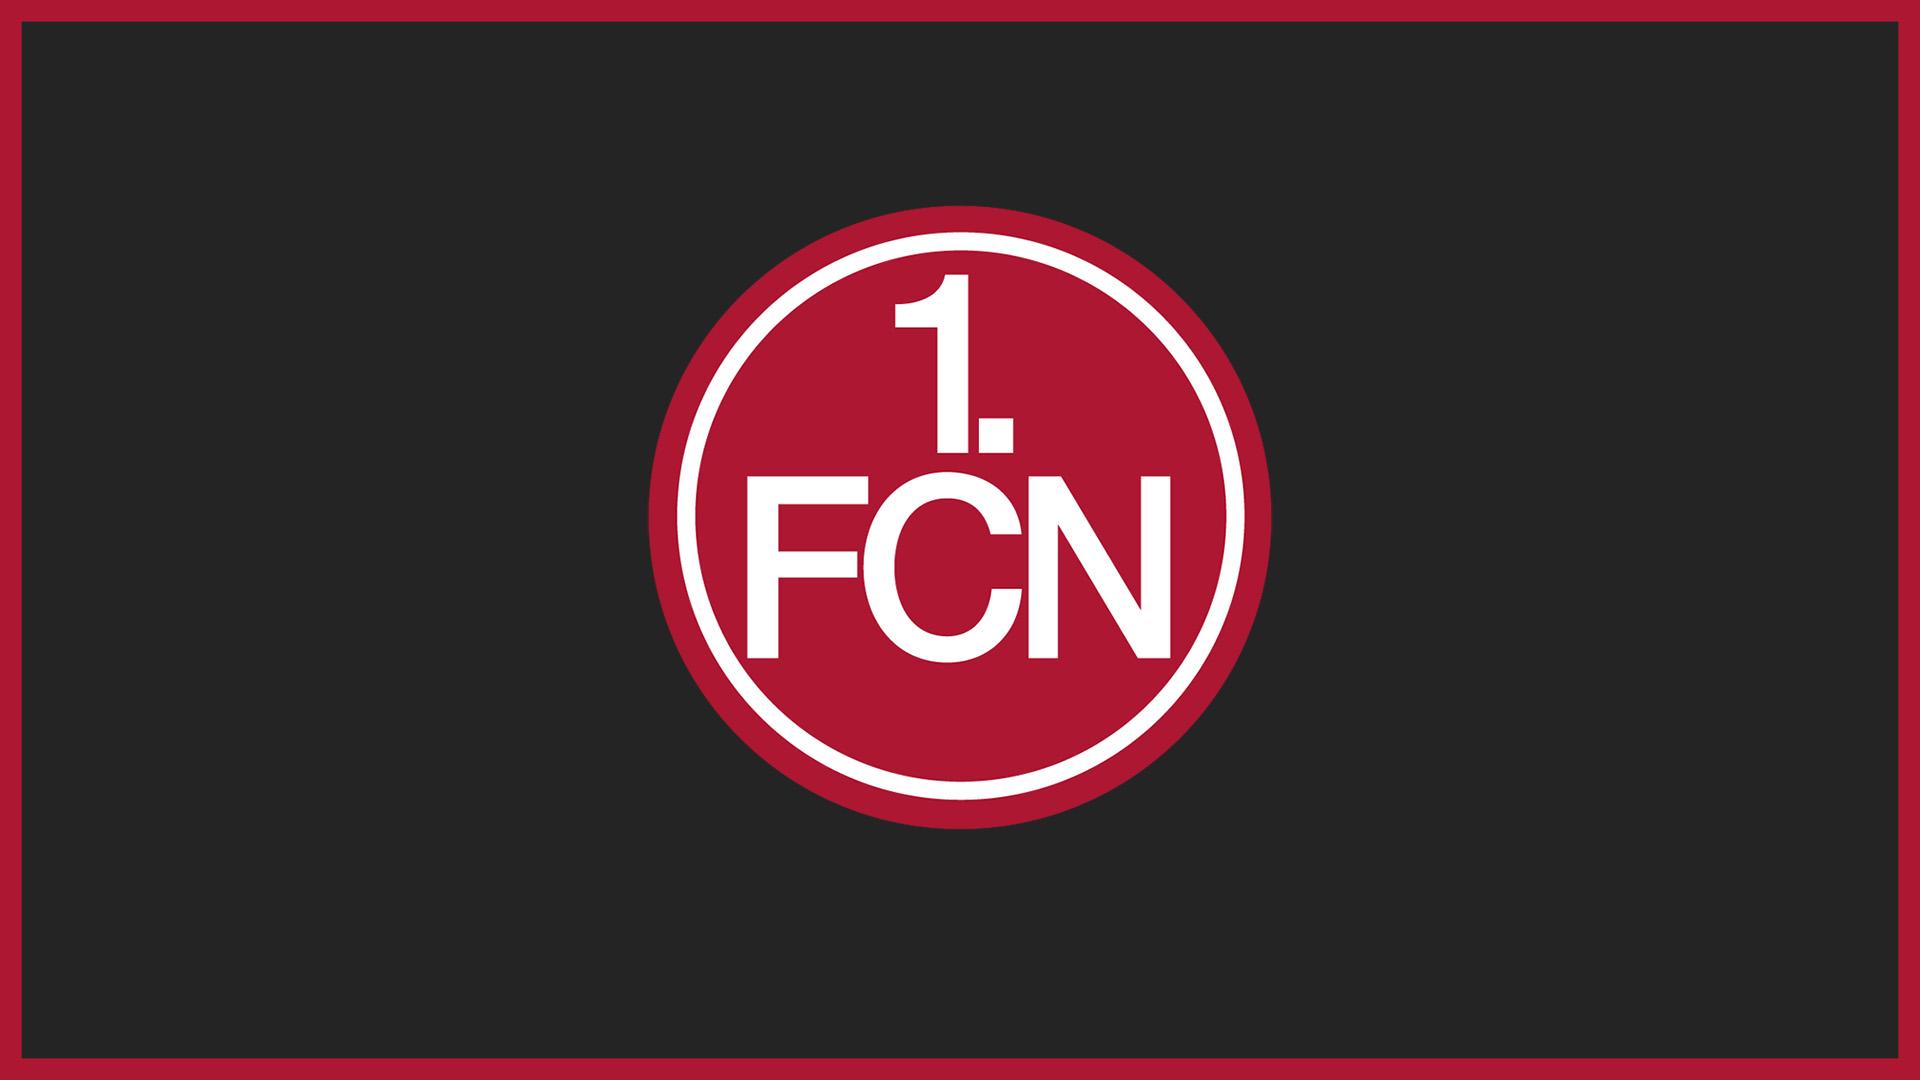 1. FC Nürnberg (FCN)